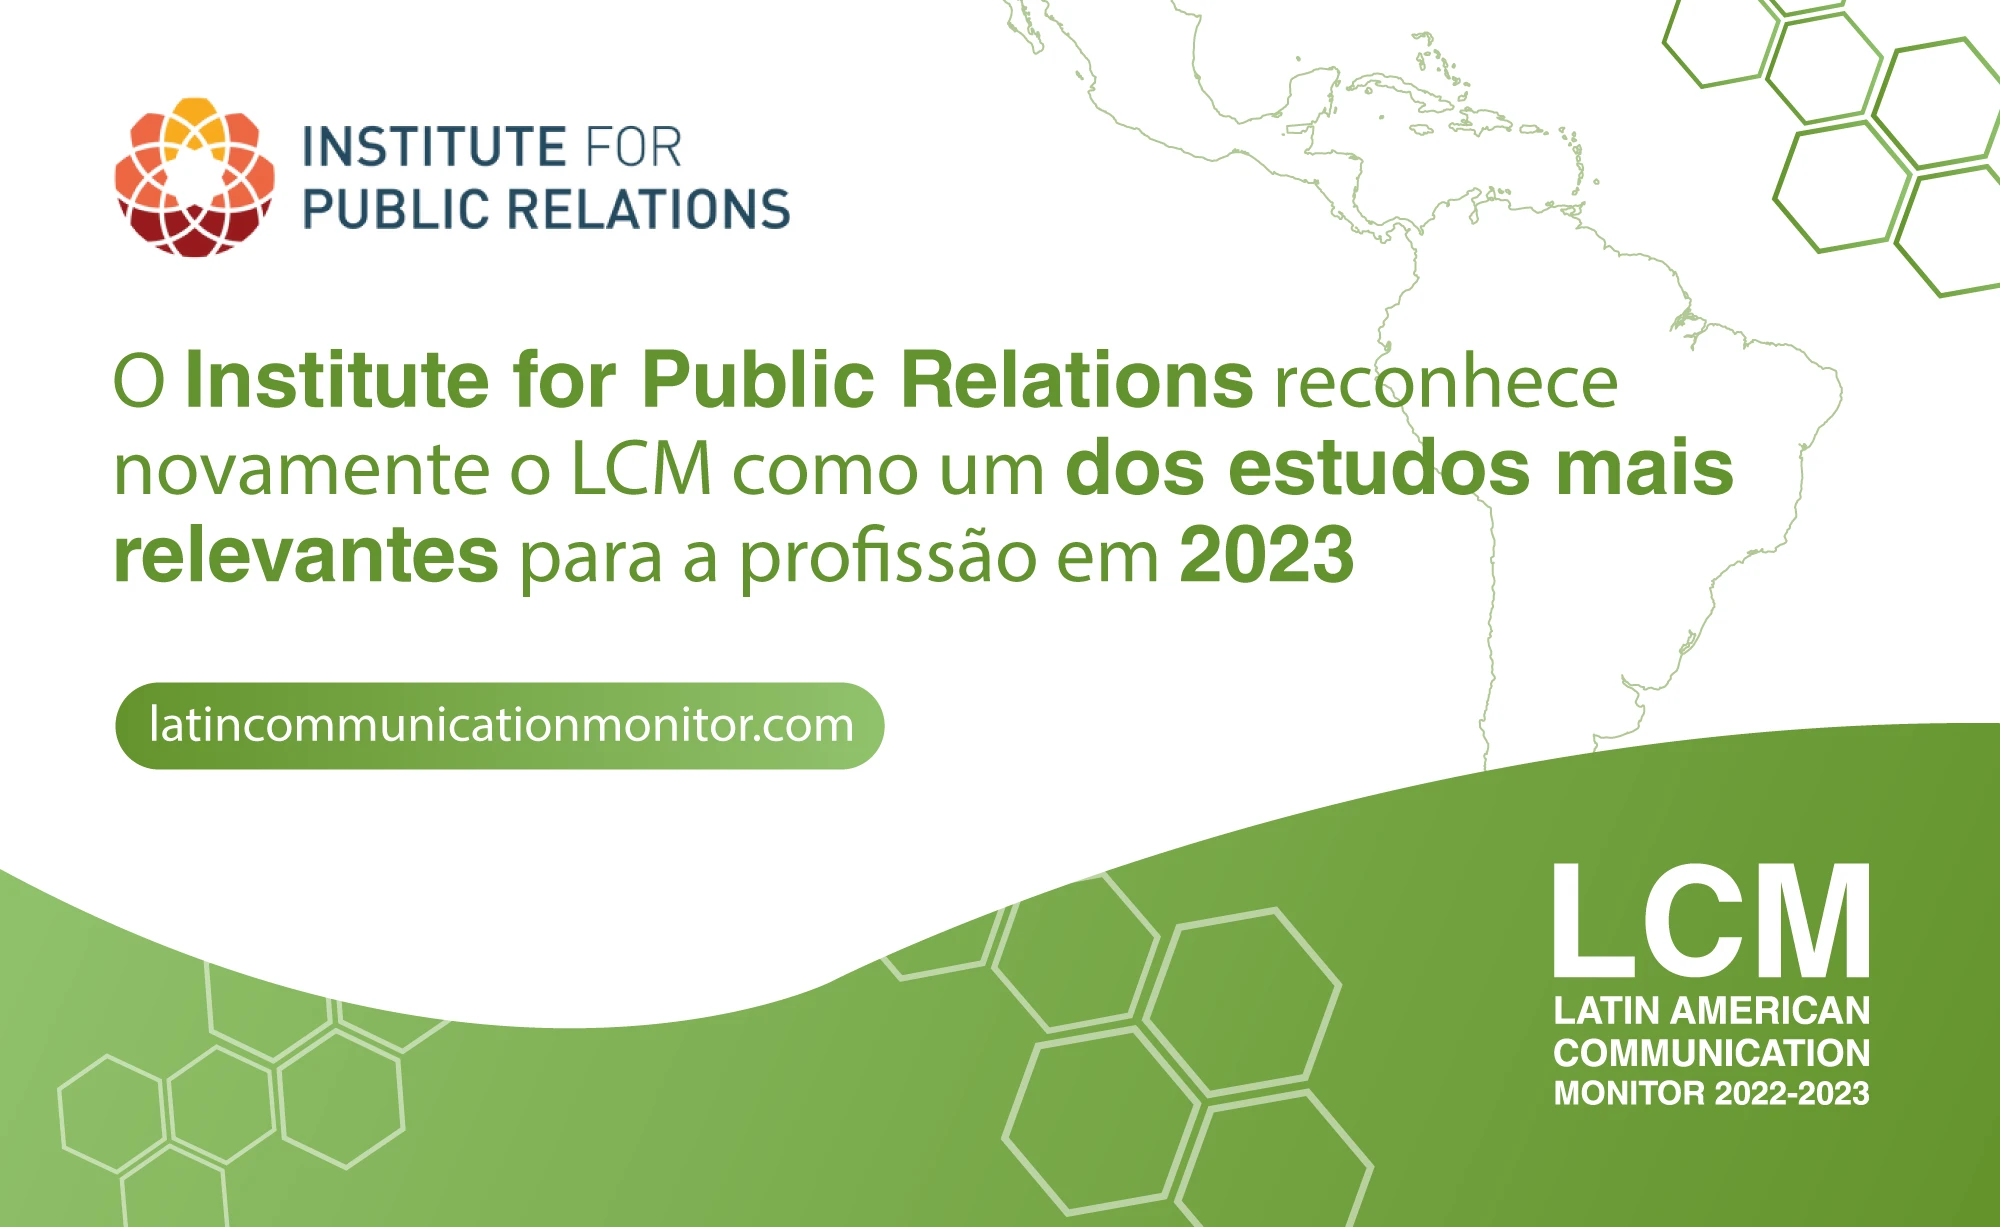 O Institute for Public Relations reconhece novamente o LCM como um dos estudos mais relevantes para a profissão em 2023